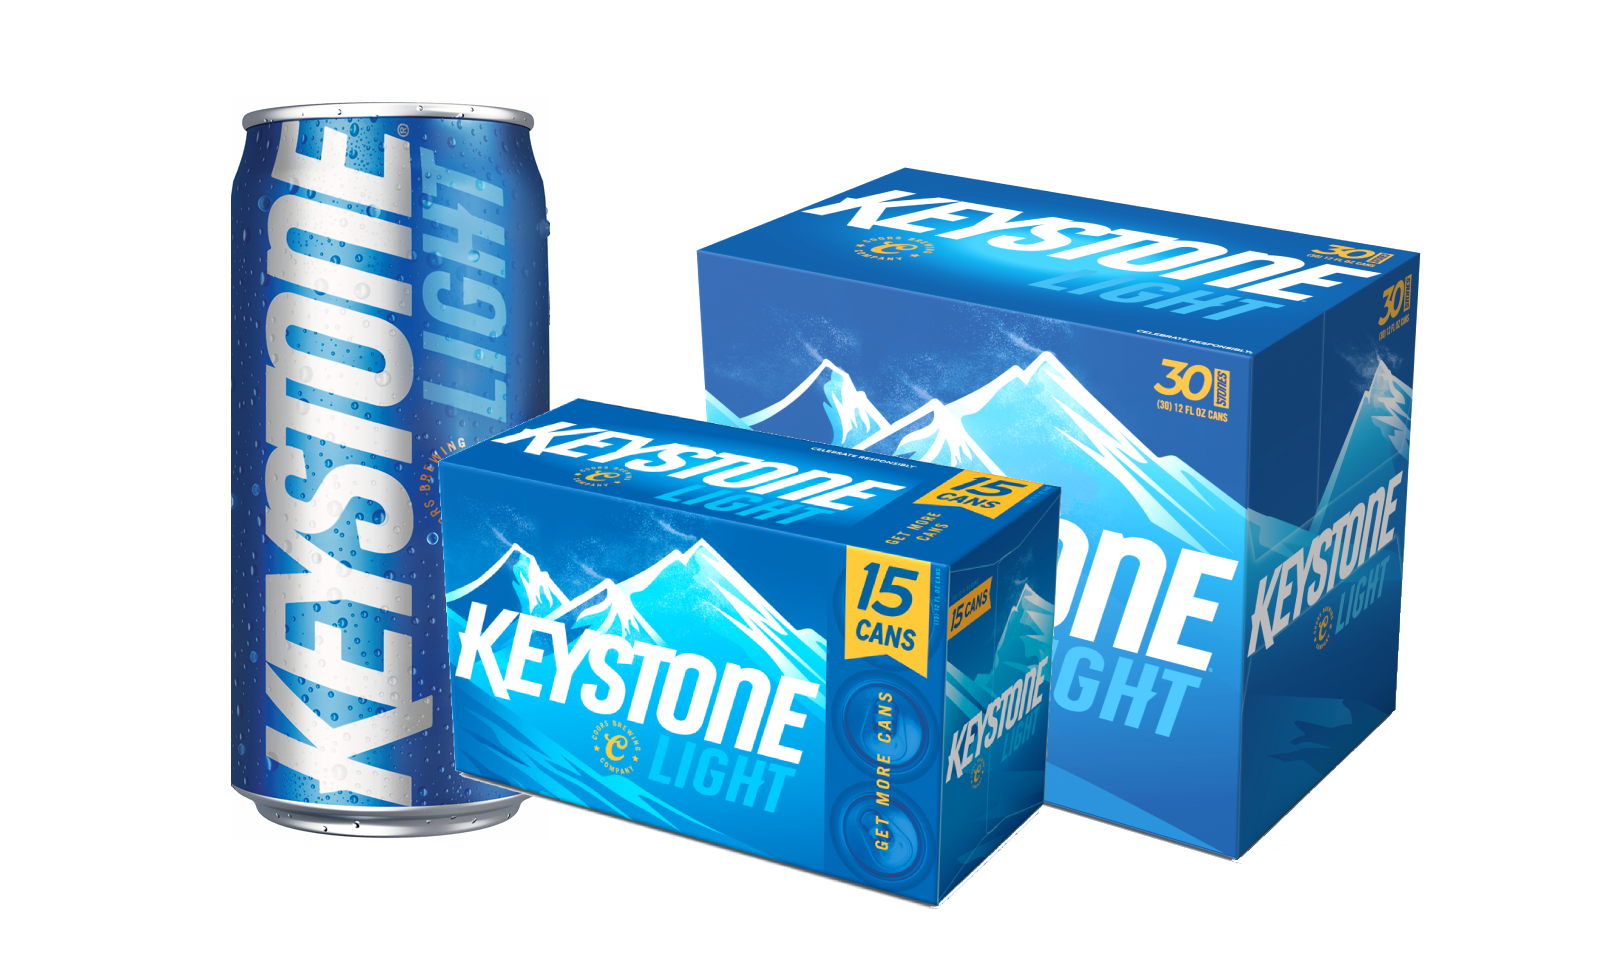 Keystone Light packaging